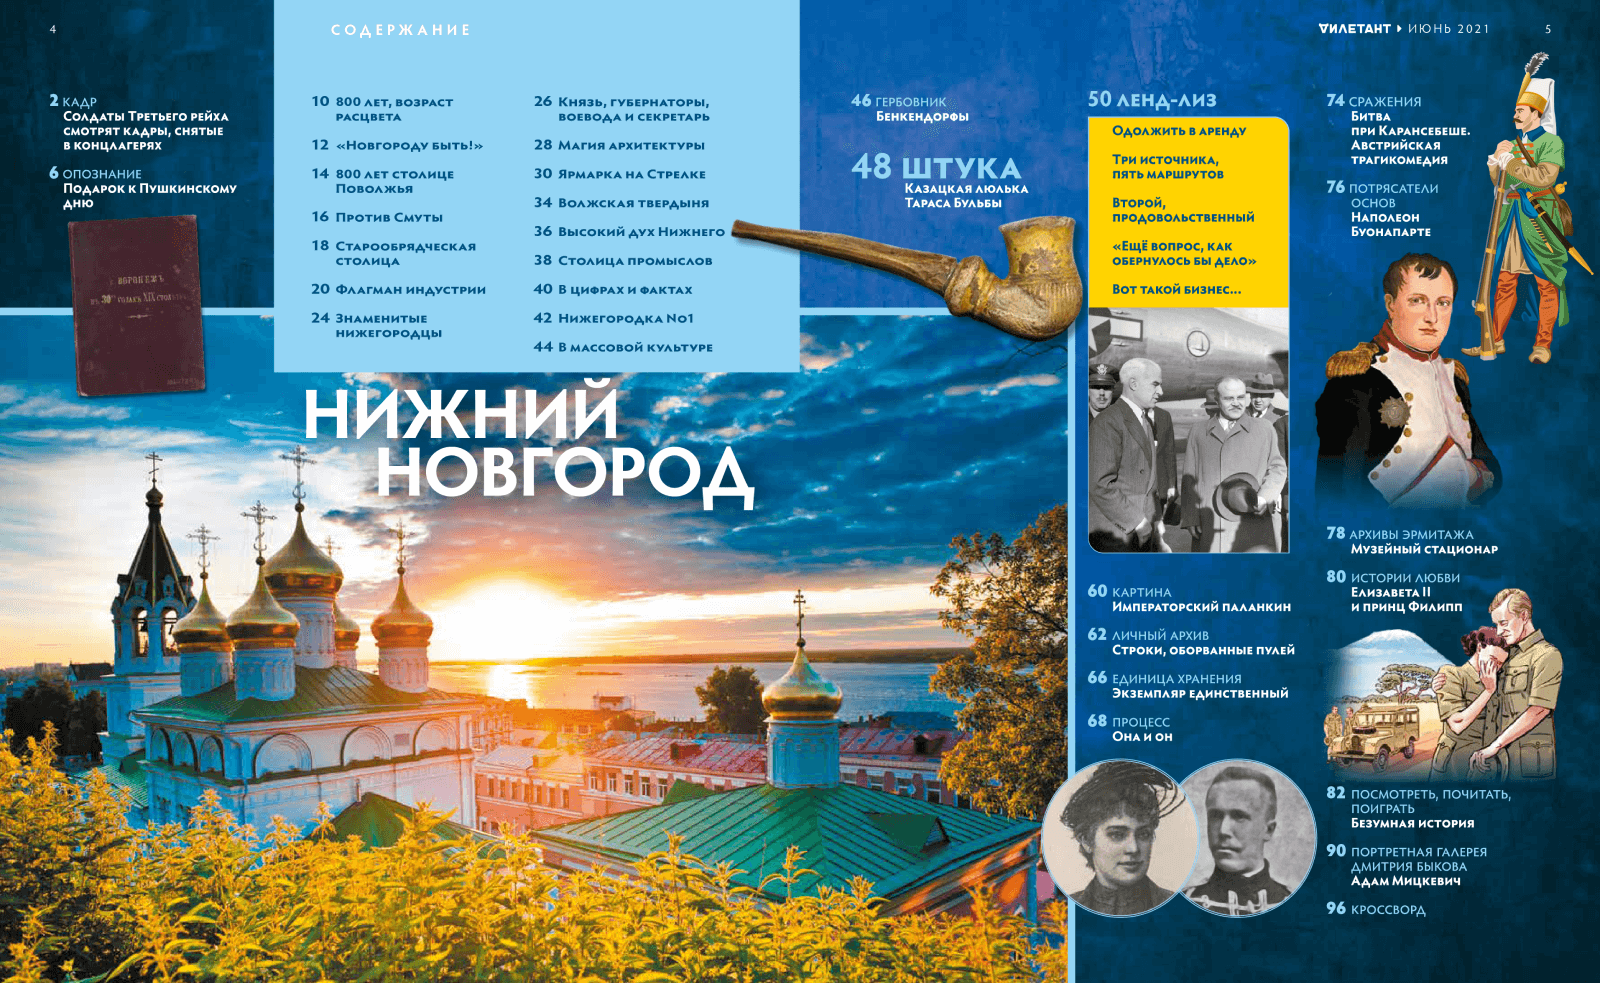 Июньский спецвыпуск познавательного исторического журнала «Дилетант» посвящен Нижнему Новгороду